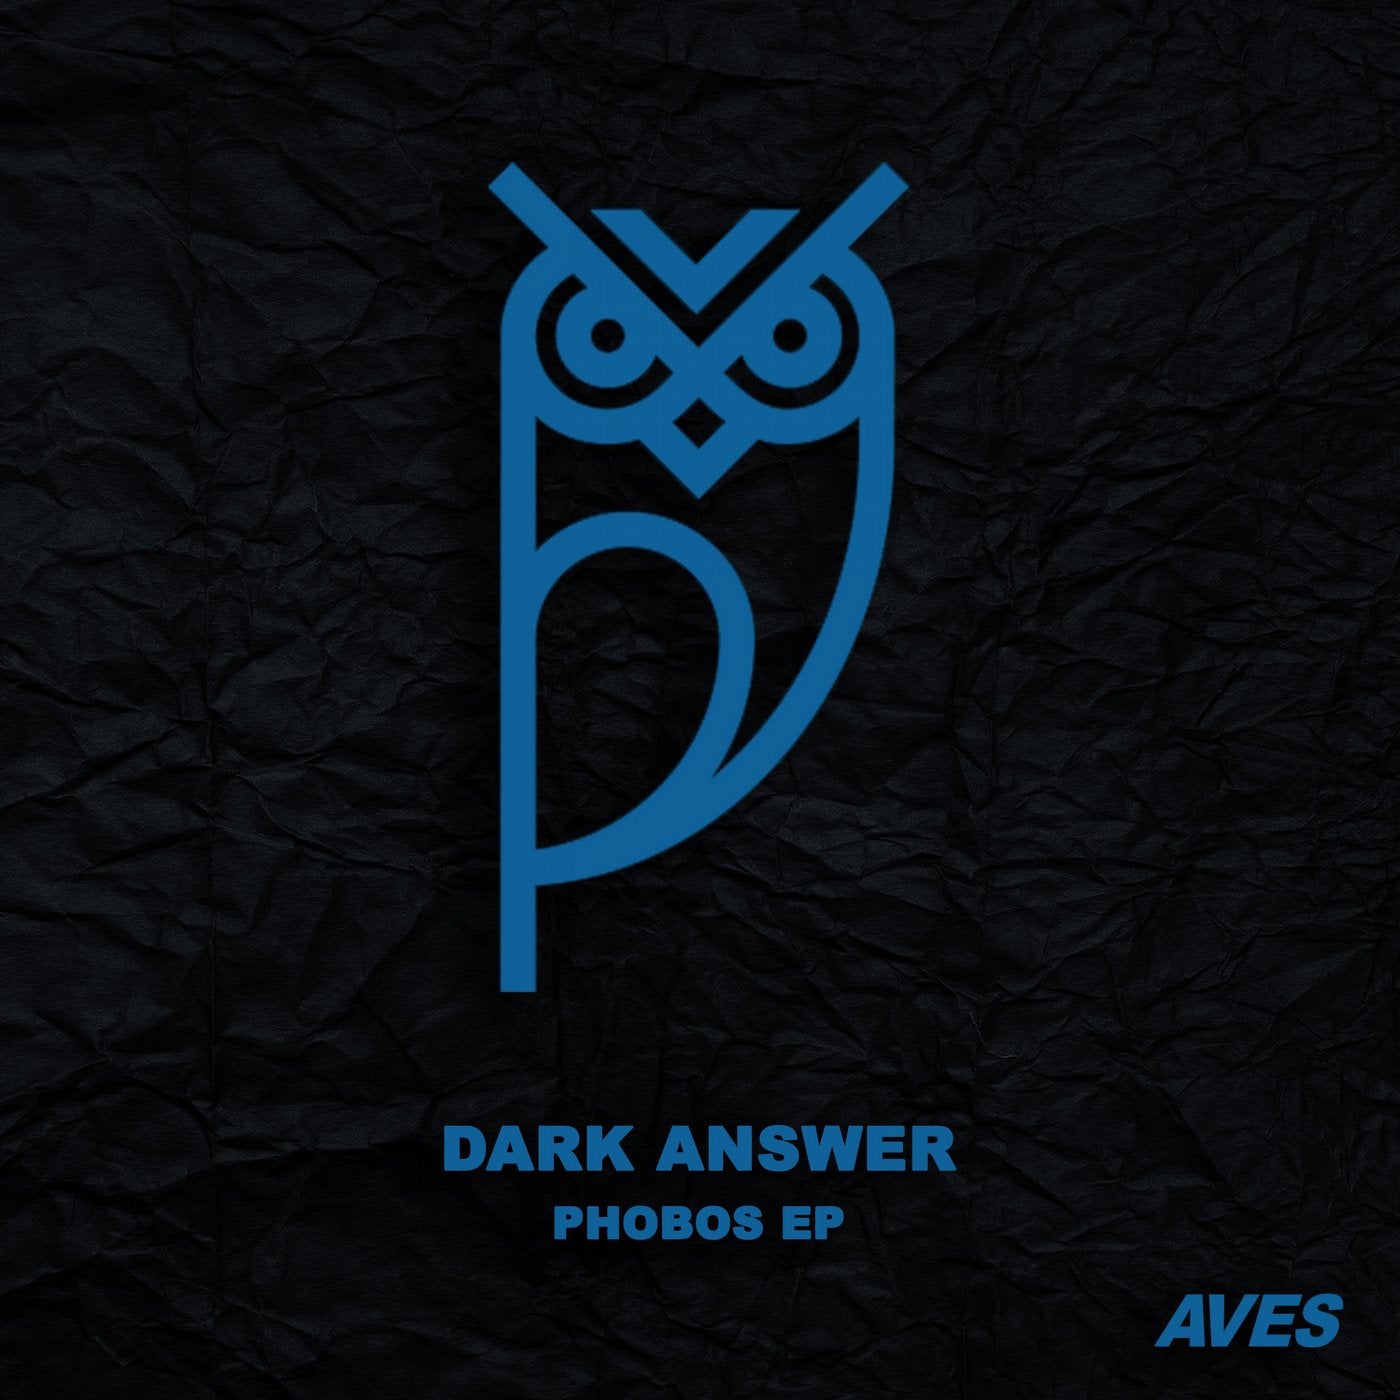 Phobos EP